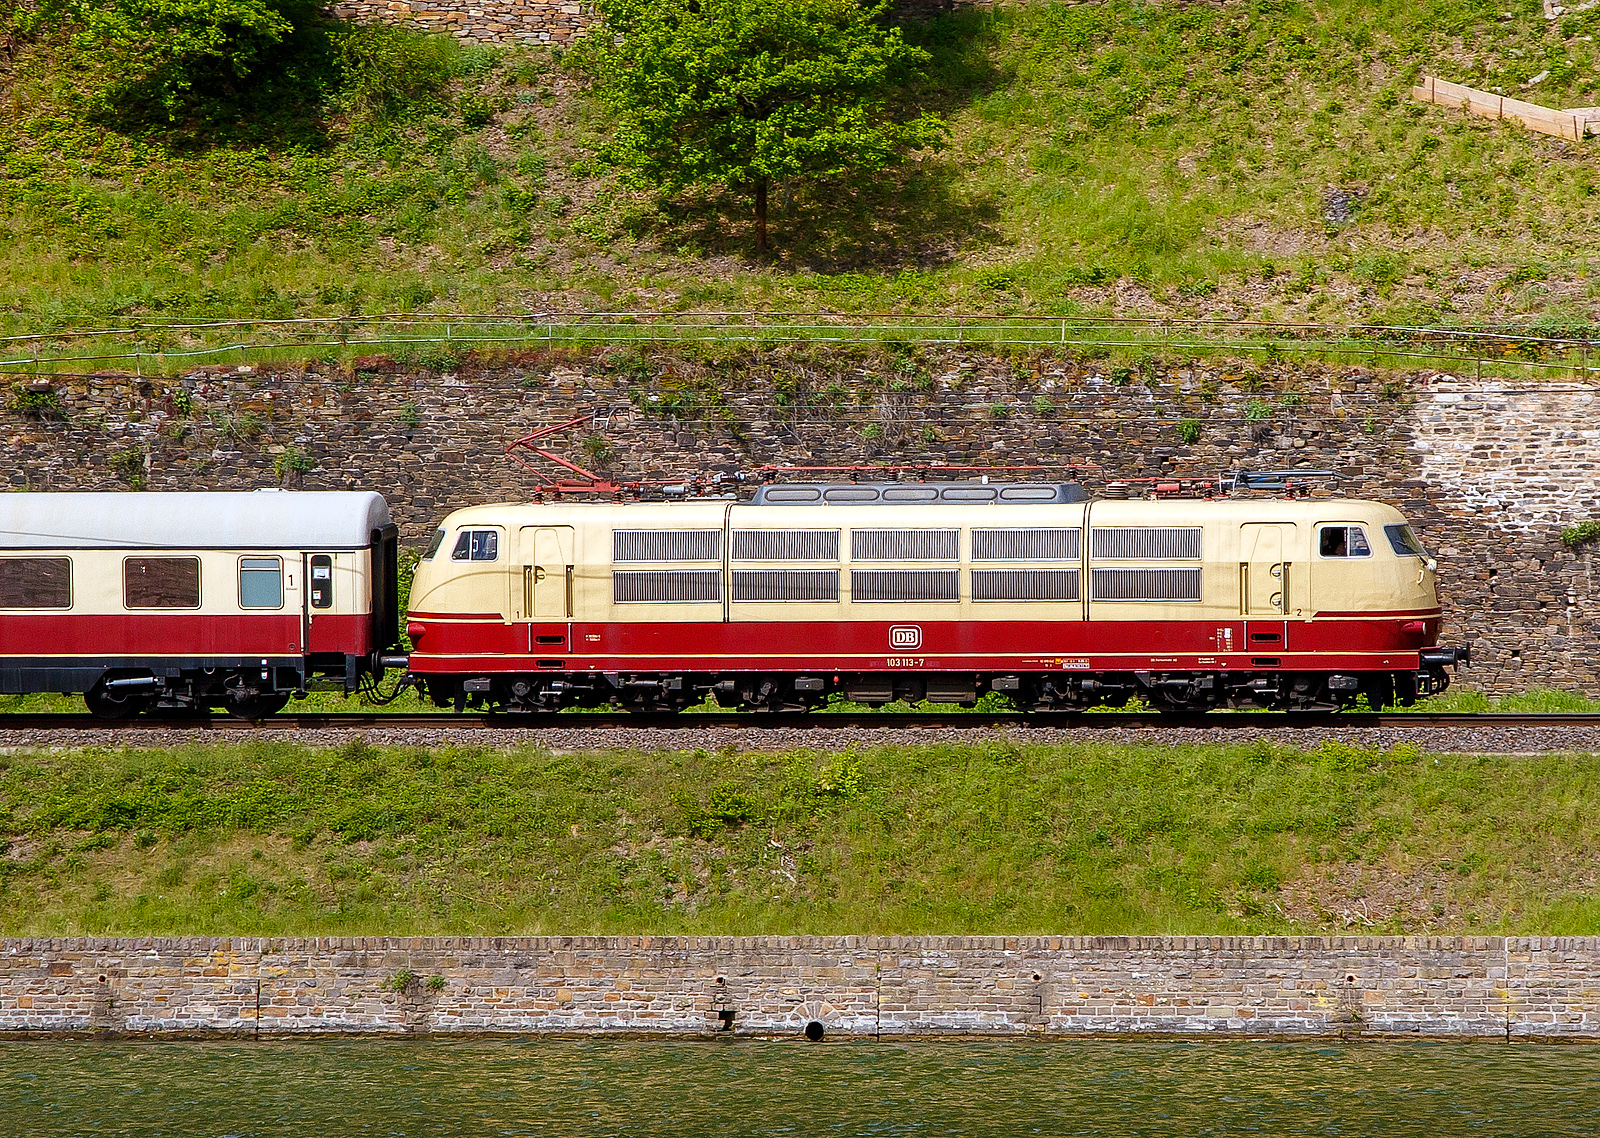 Dampfspektakel 2018 - Die 103 113-7 (91 80 6103 113-7 D-DB) vom DB-Museums in Koblenz mit ihrem kurzem TEE (Trans Europ Express) Trier - Wittlich - Koblenz, fährt am 28.04.2018 zwischen Kattenes und Löf in Richtung Koblenz. 

Die 103.1 wurde 1970 von Henschel in Kassel unter der Fabriknummer 31431 gebaut, der elektrische Teil ist von Siemens. Die E-Loks der BR 103 sind die weltweit stärkste einteilige Lokomotiven Sie haben eine Leistung von 10.400 kW (14.140 PS) die auf 9.000 kW (12.236 PS) begrenzt wurden.